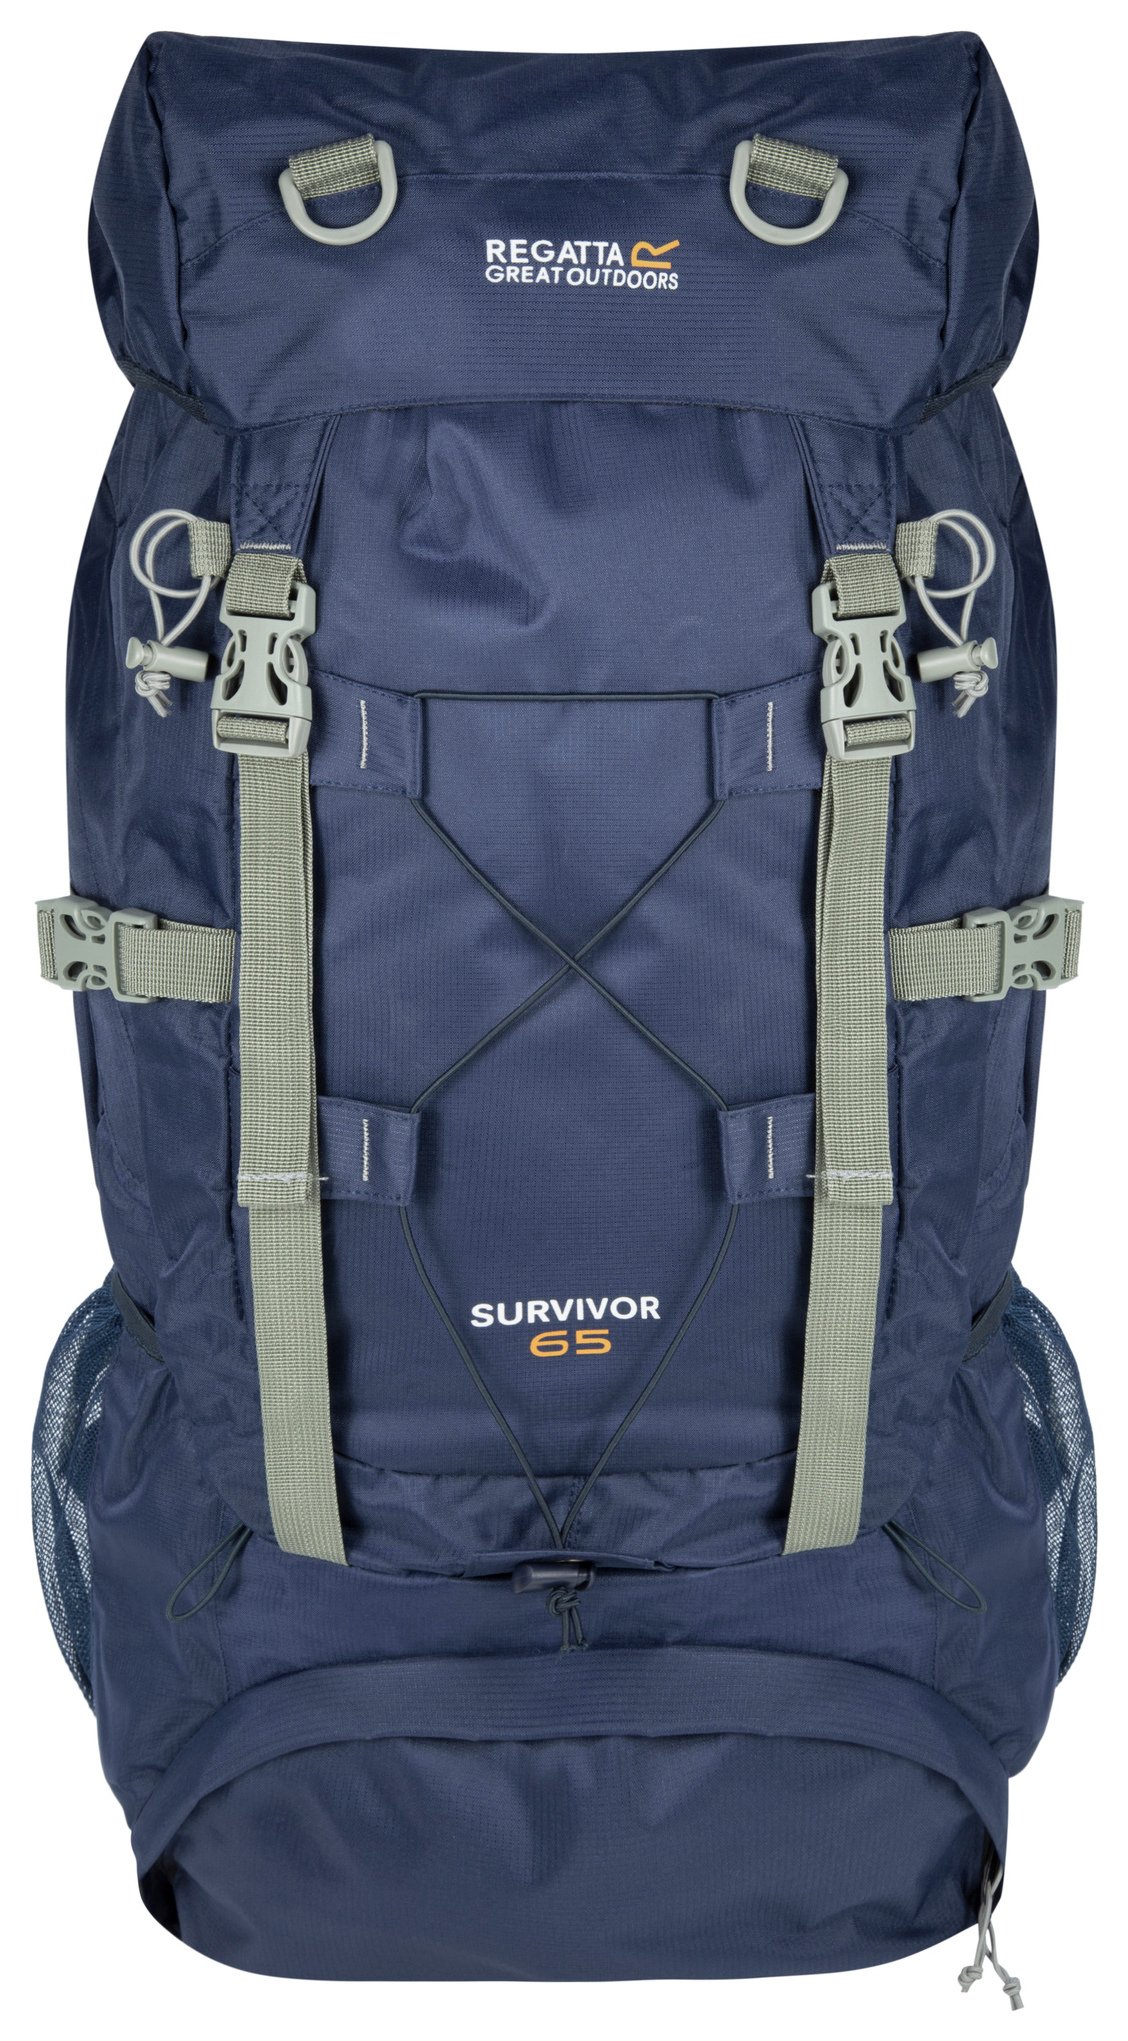 Regatta Survivor III 65L Backpack - Navy Blue